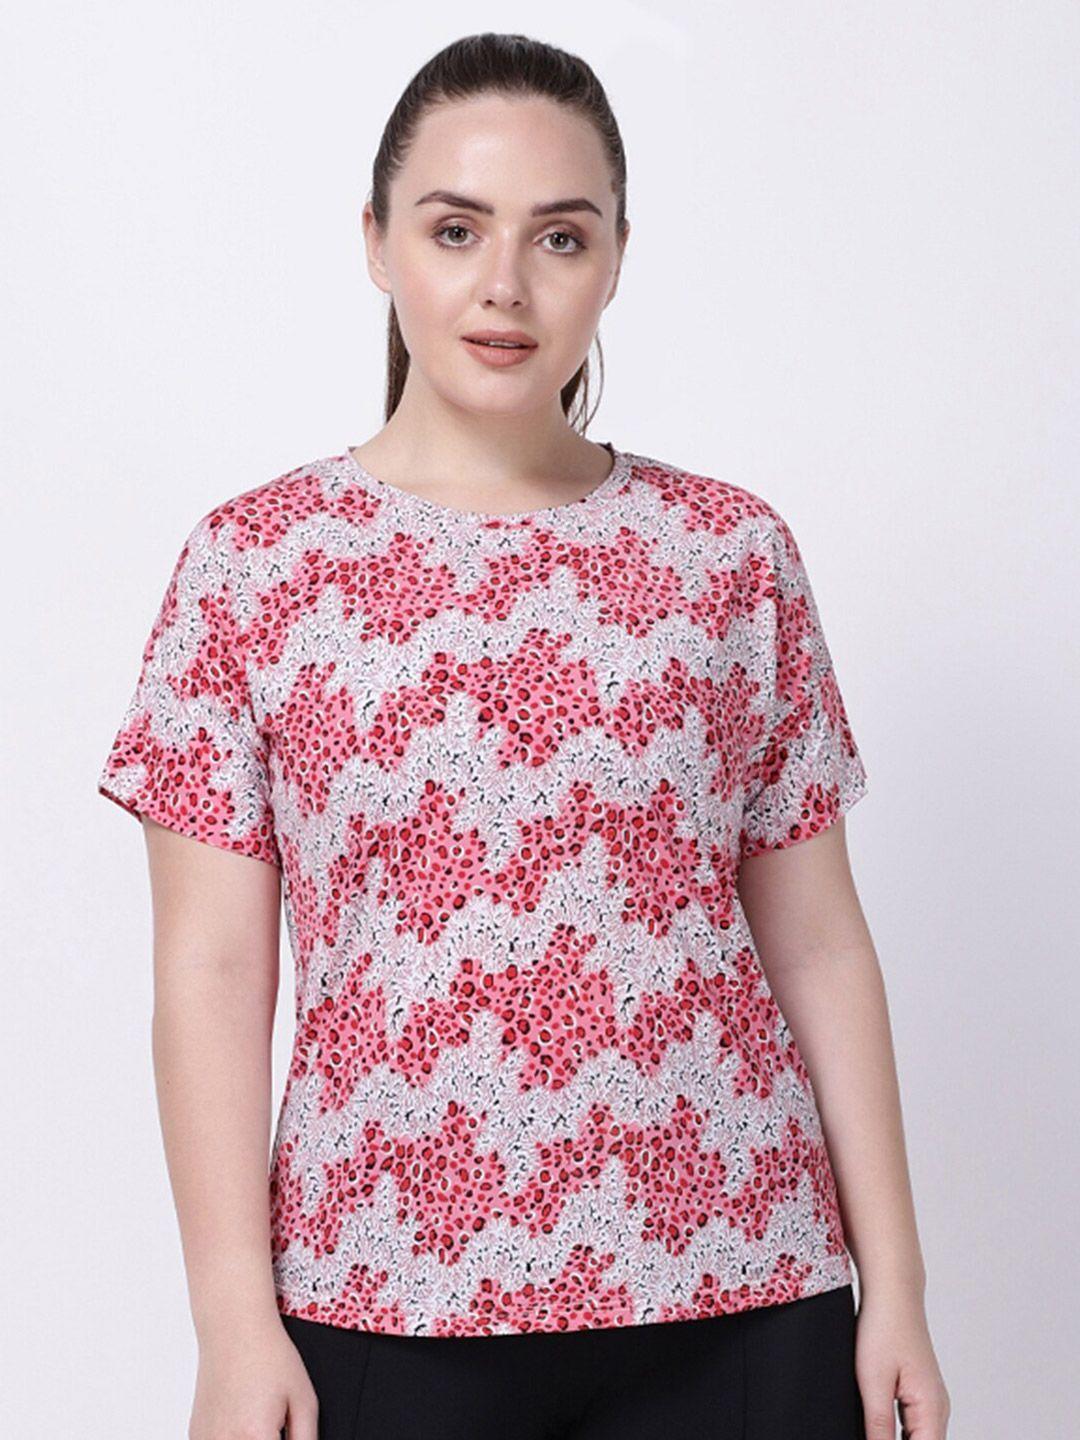 studioactiv women pink & white floral printed t-shirt